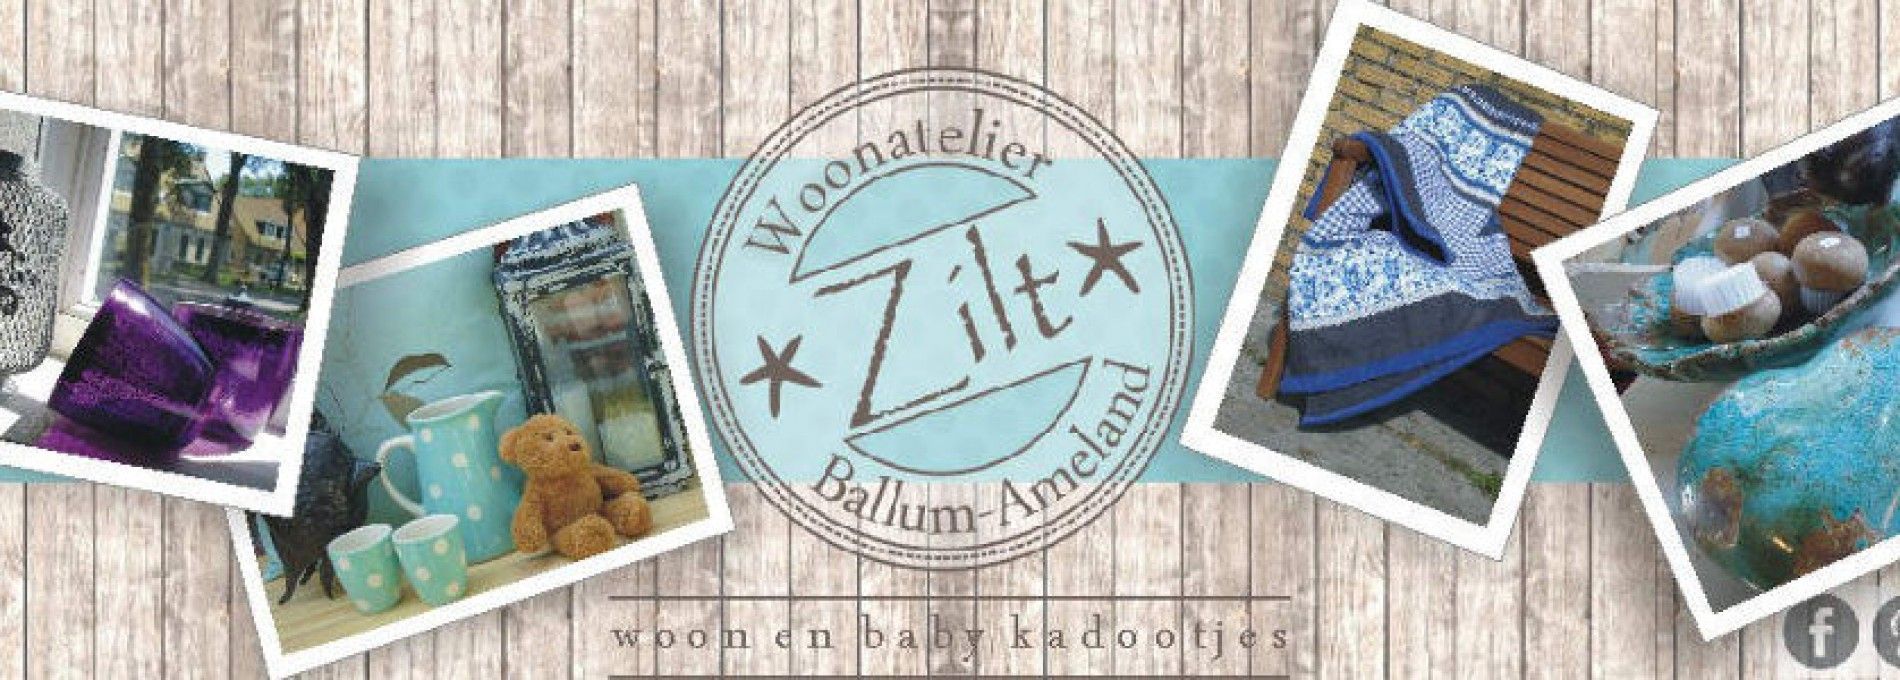 Woonatelier Zilt - VVV Ameland